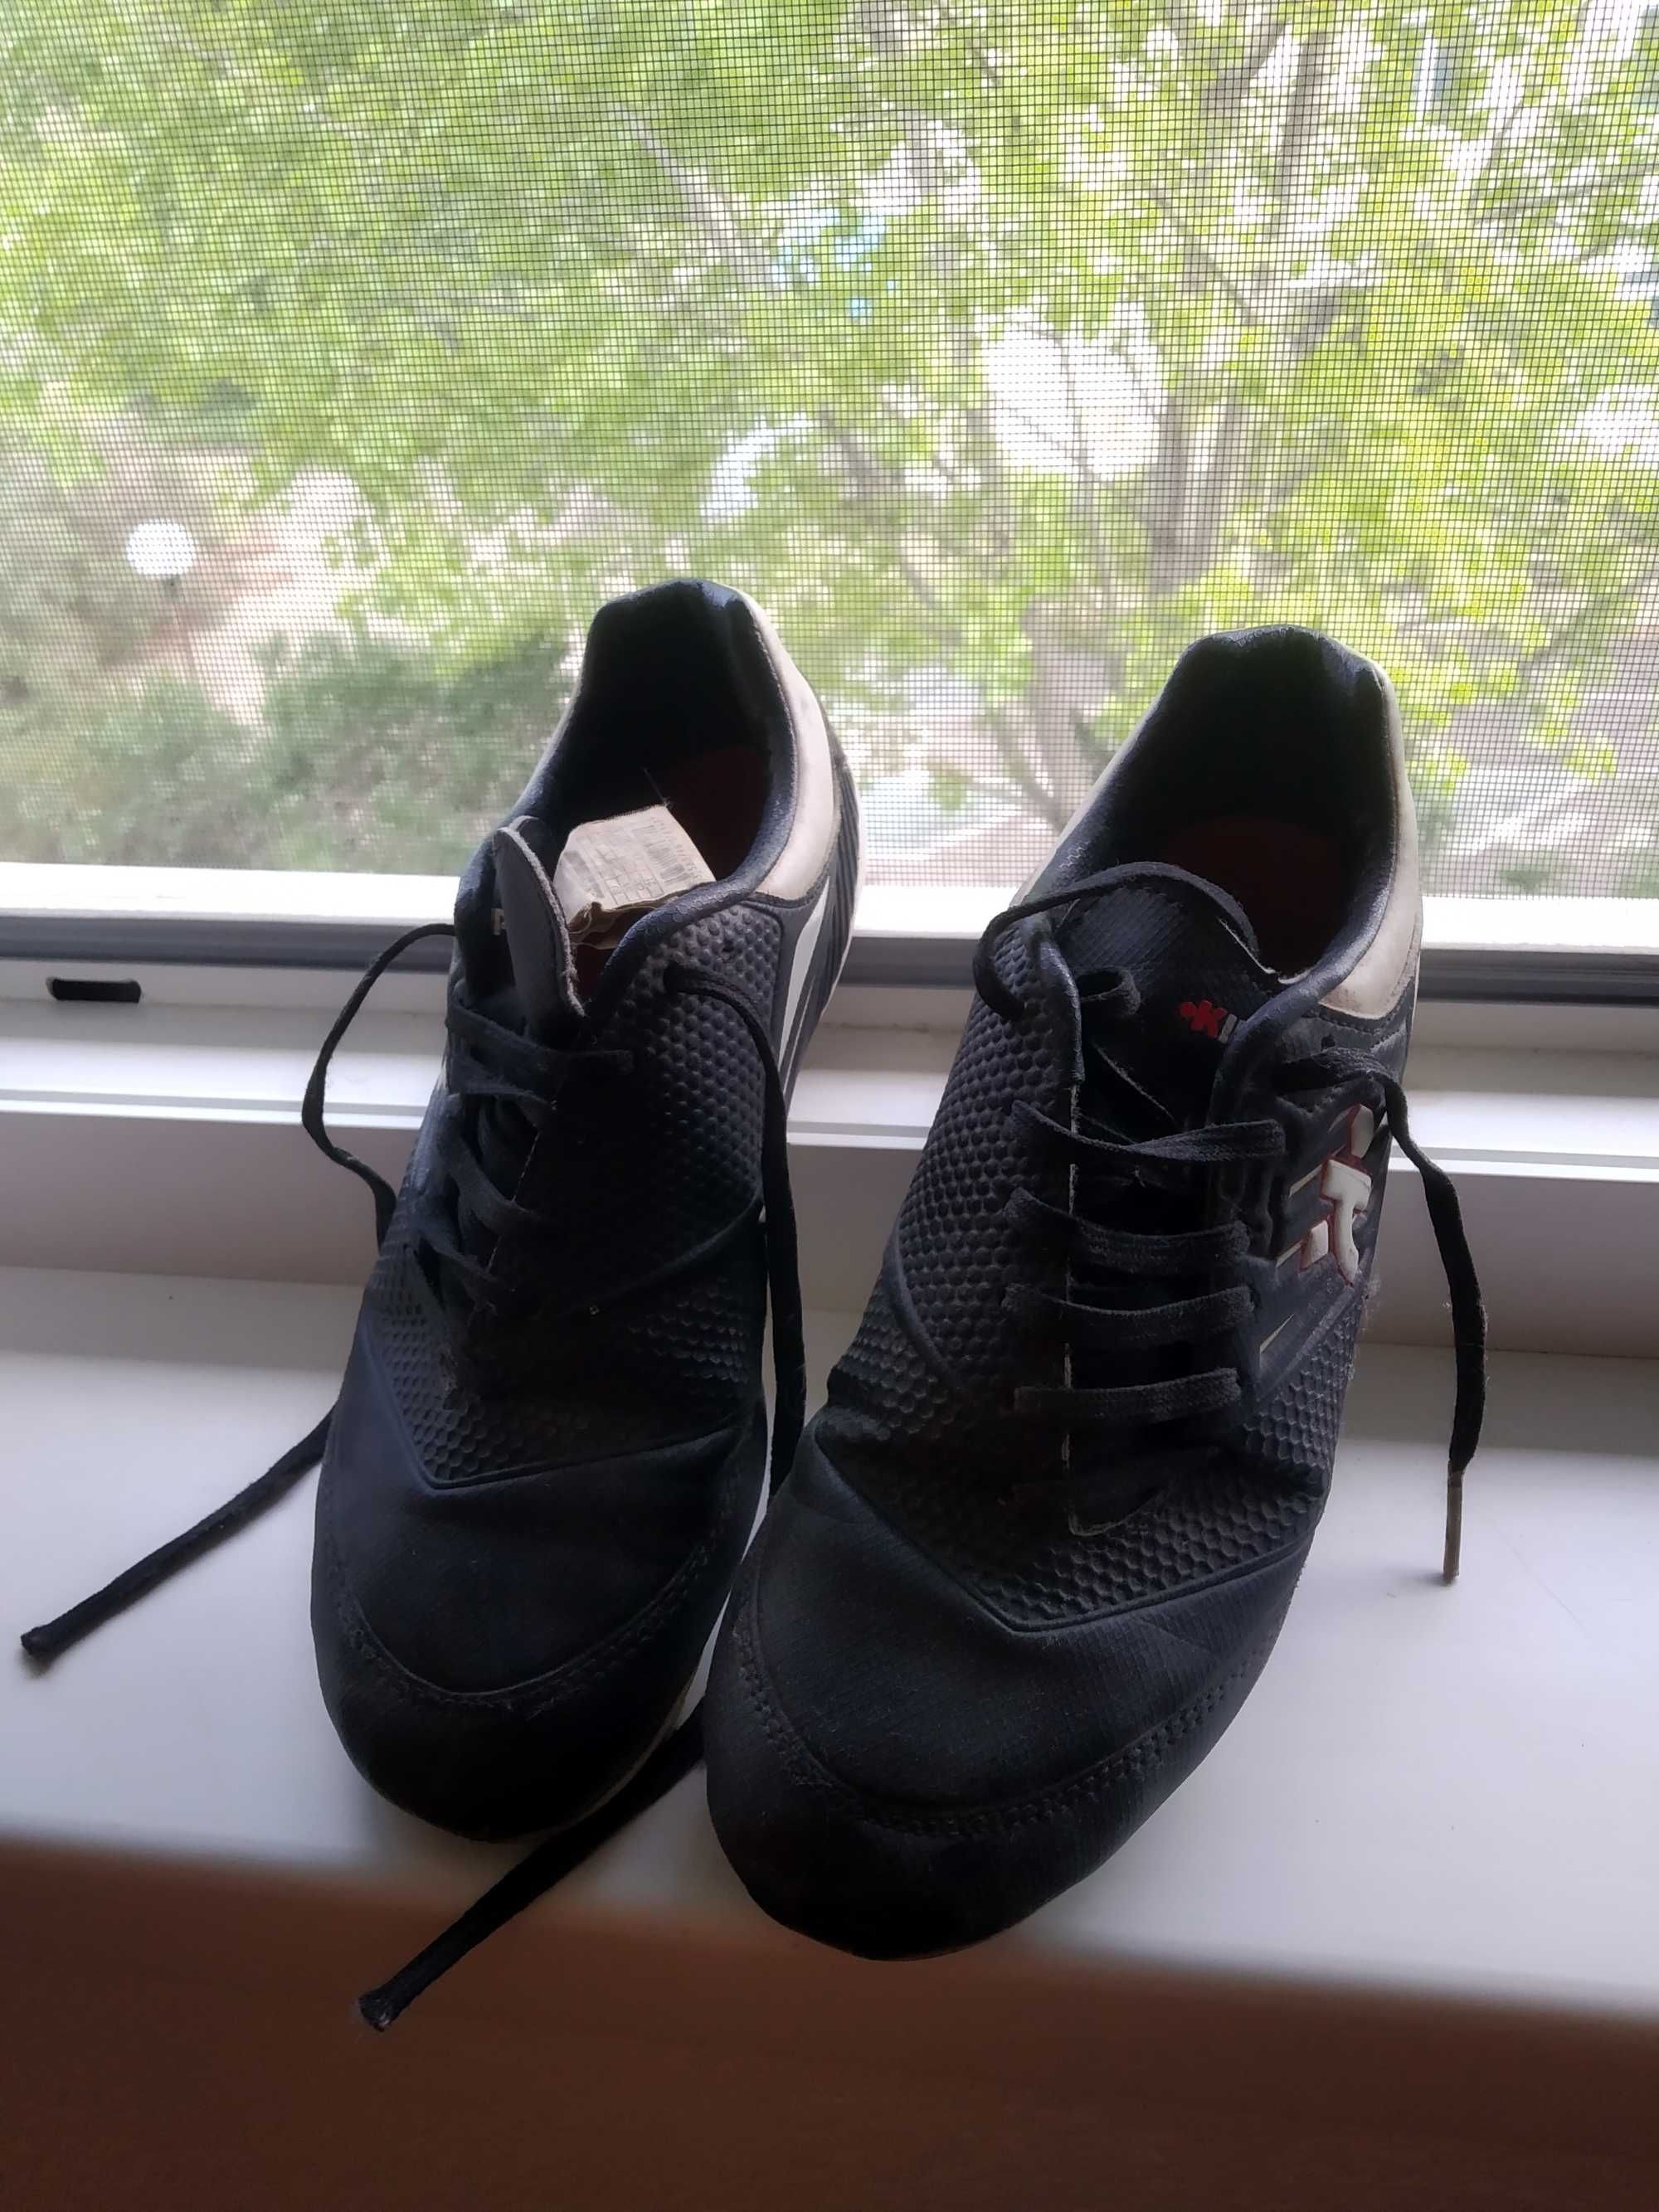 Футболни обувки купувани от Италия